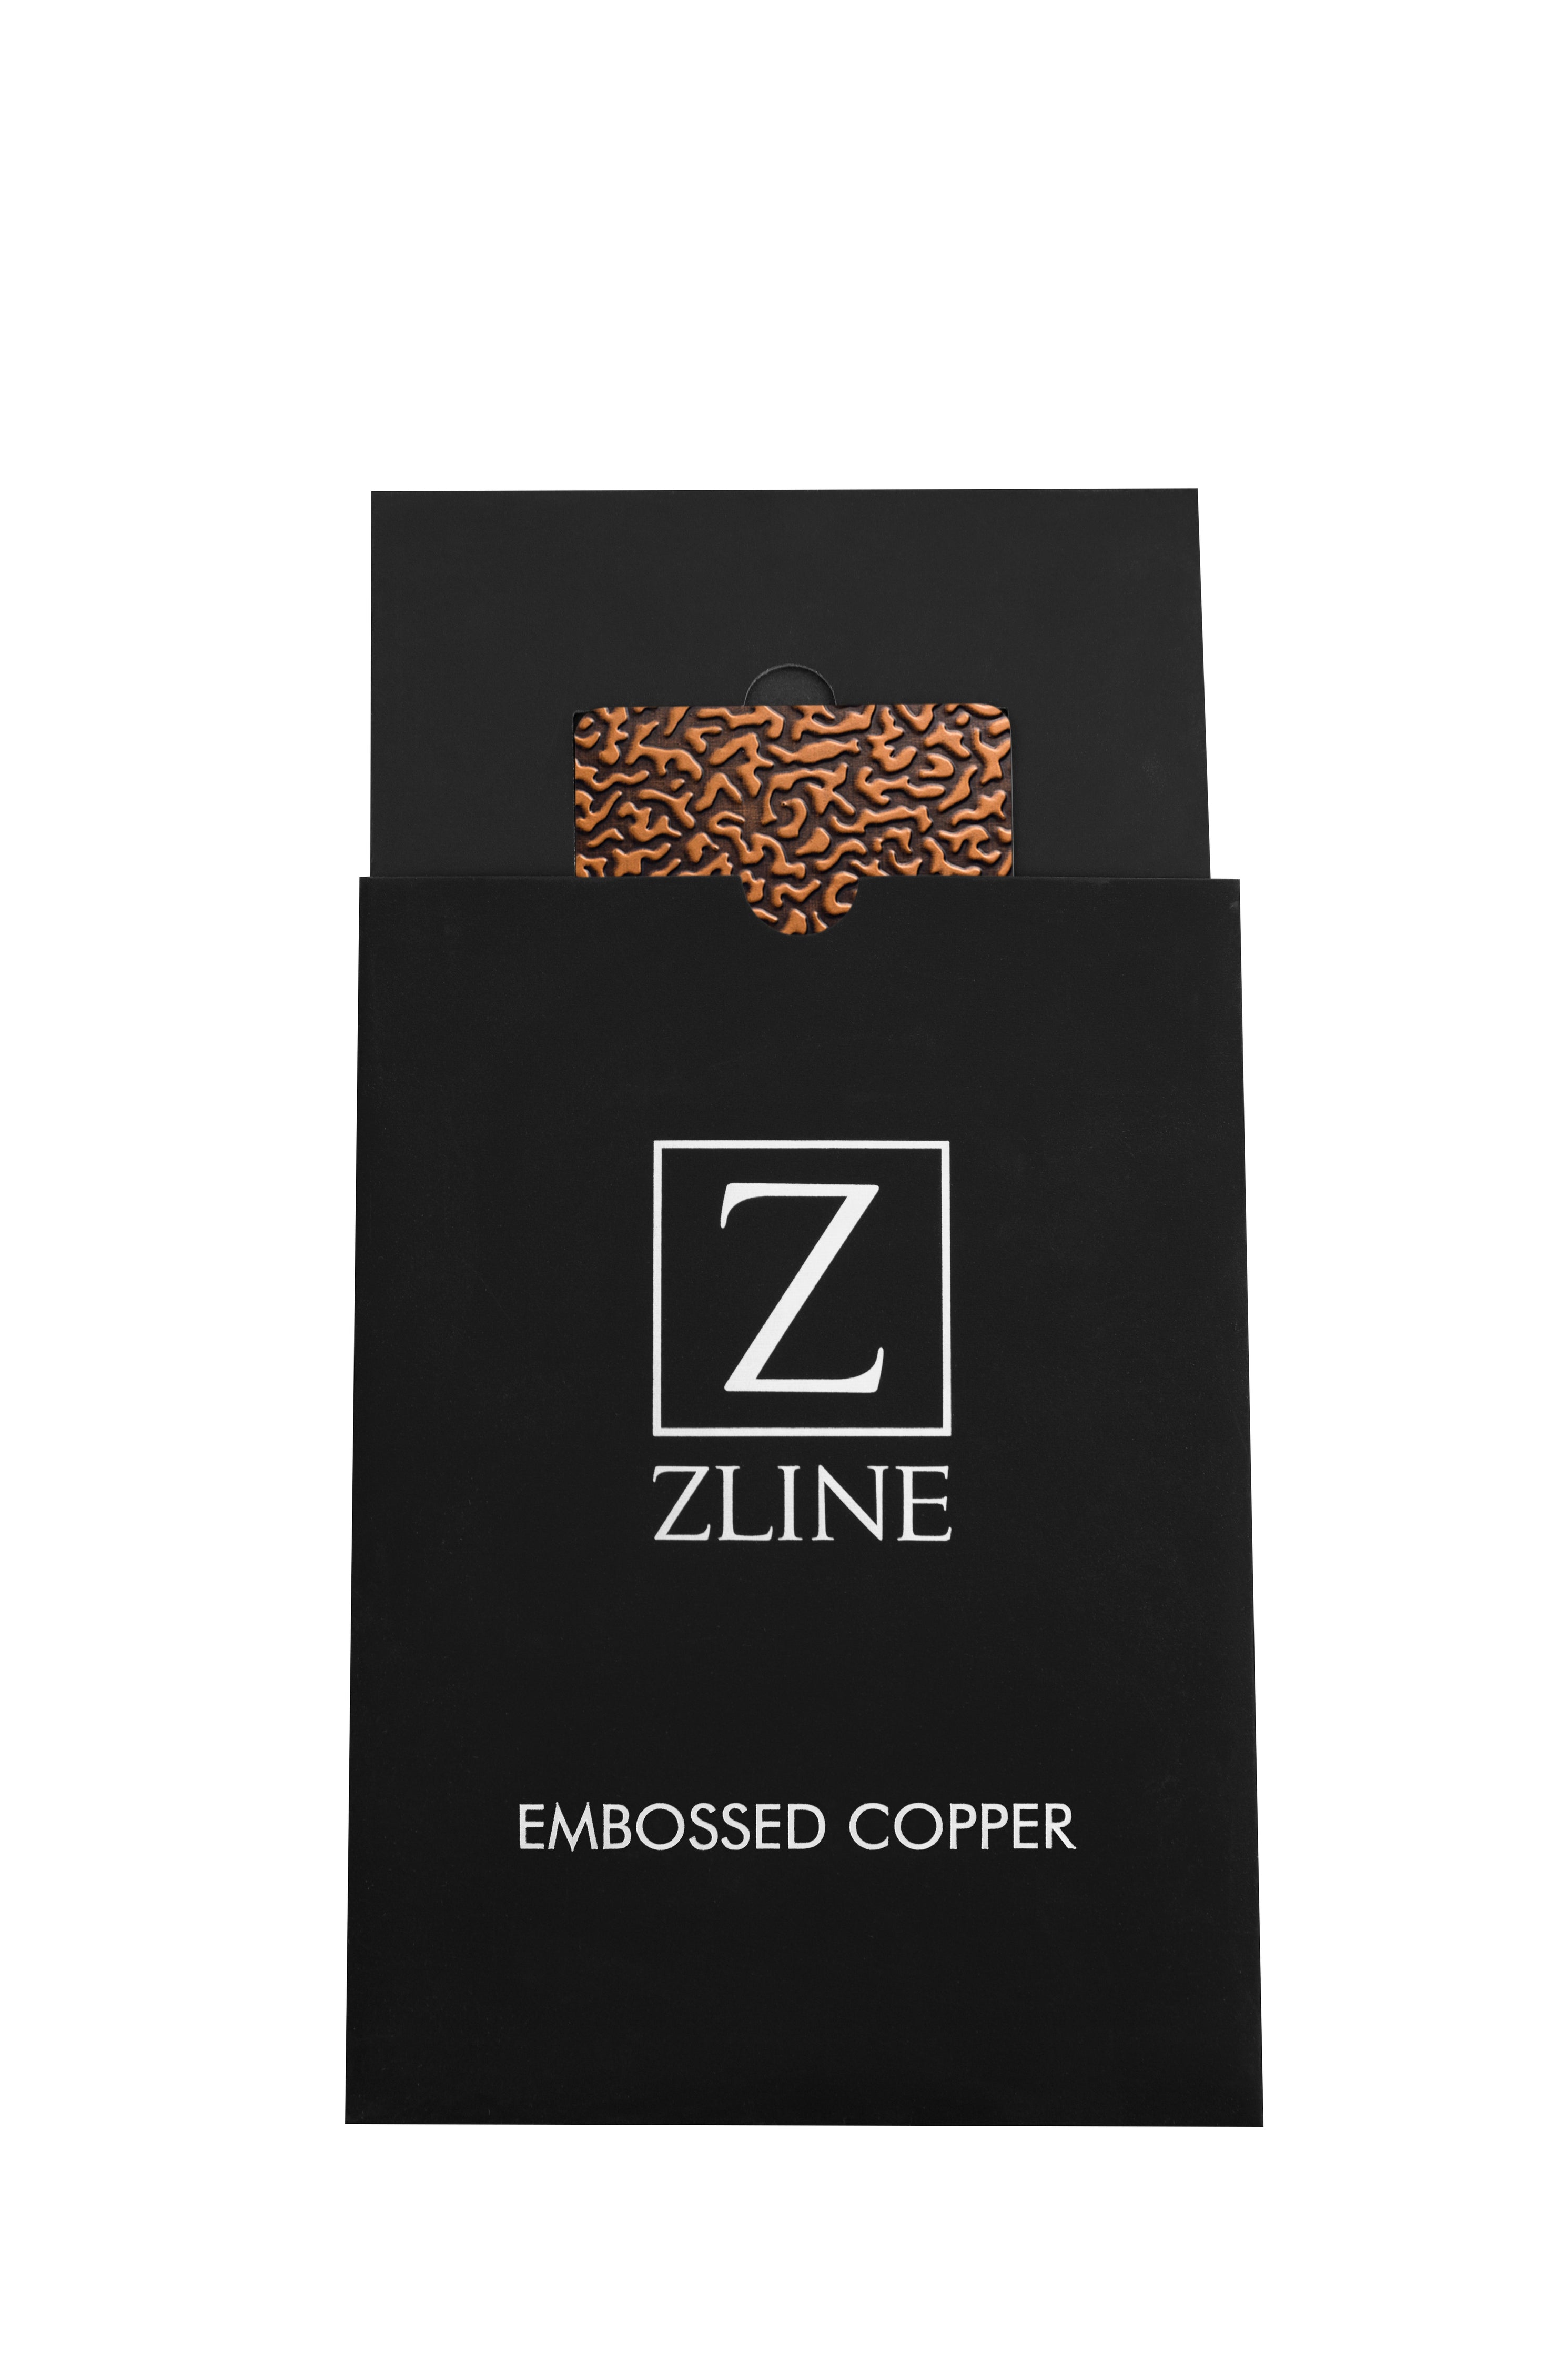 3 x 5 Embossed Copper Sample (CS-E)